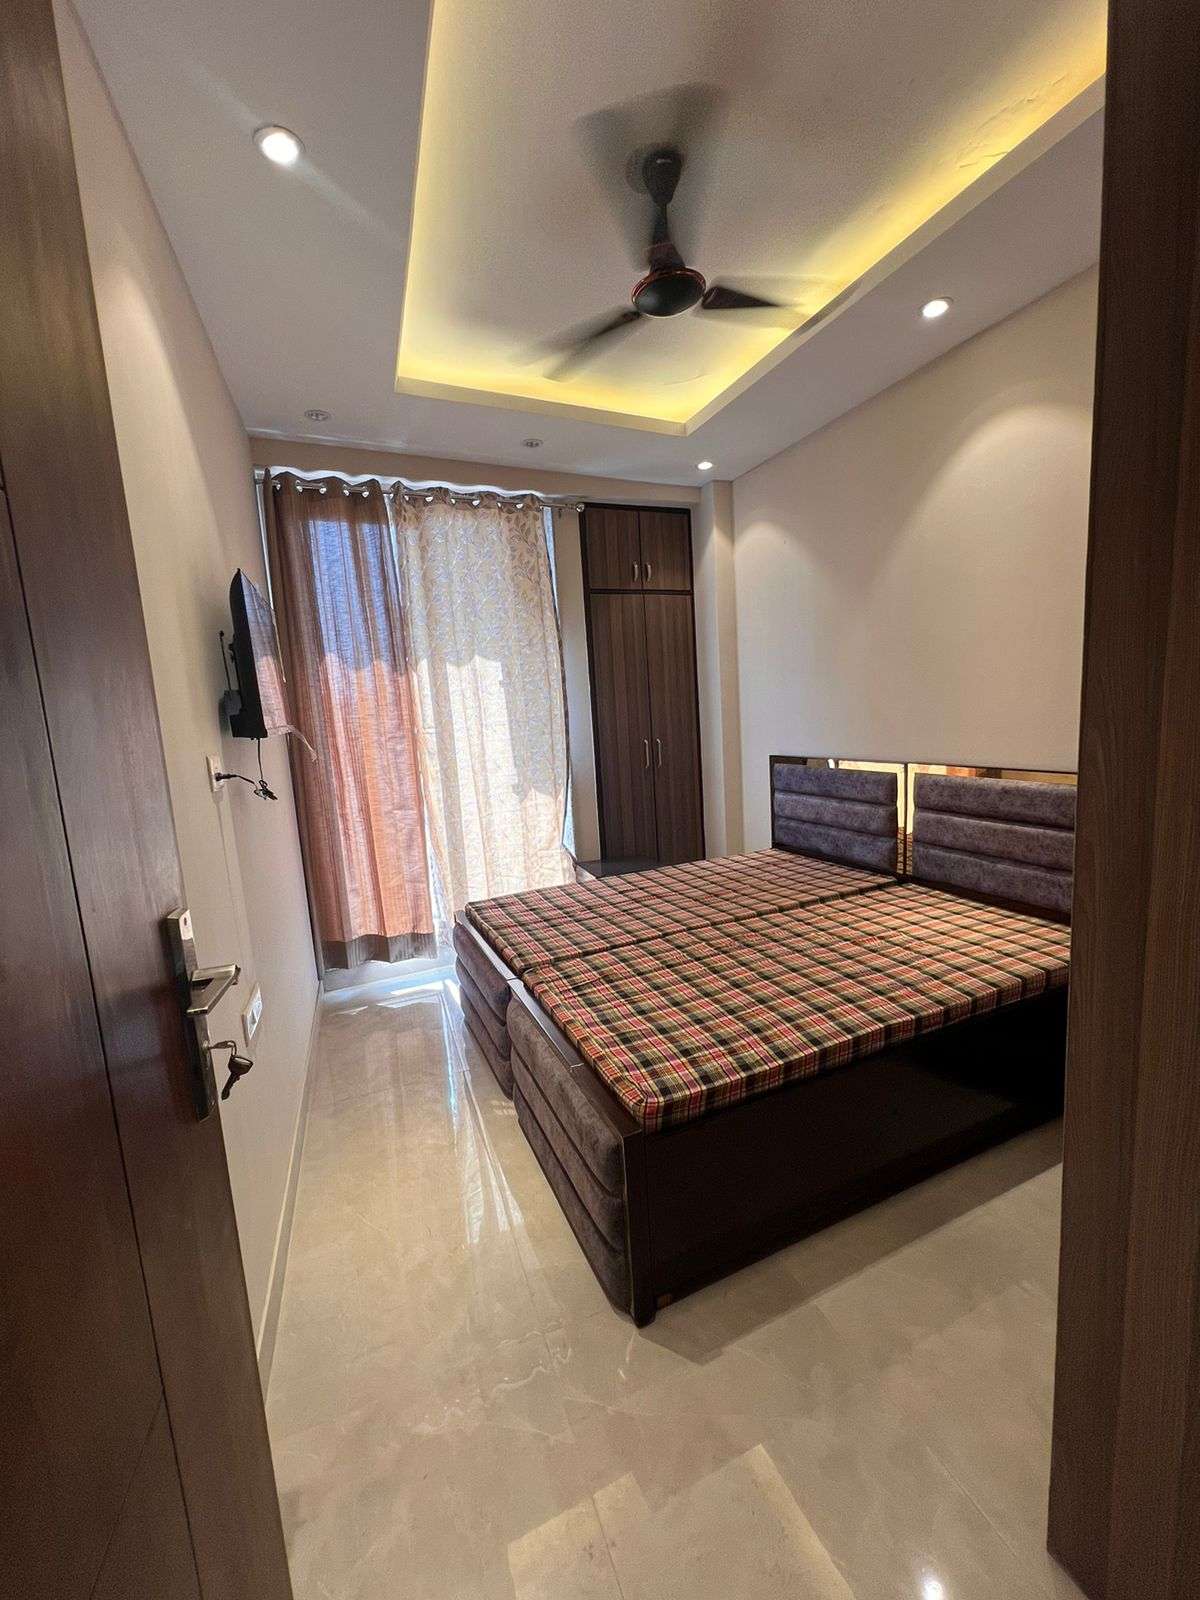 Studio Builder Floor For Rent in Rajouri Garden Delhi 6583214